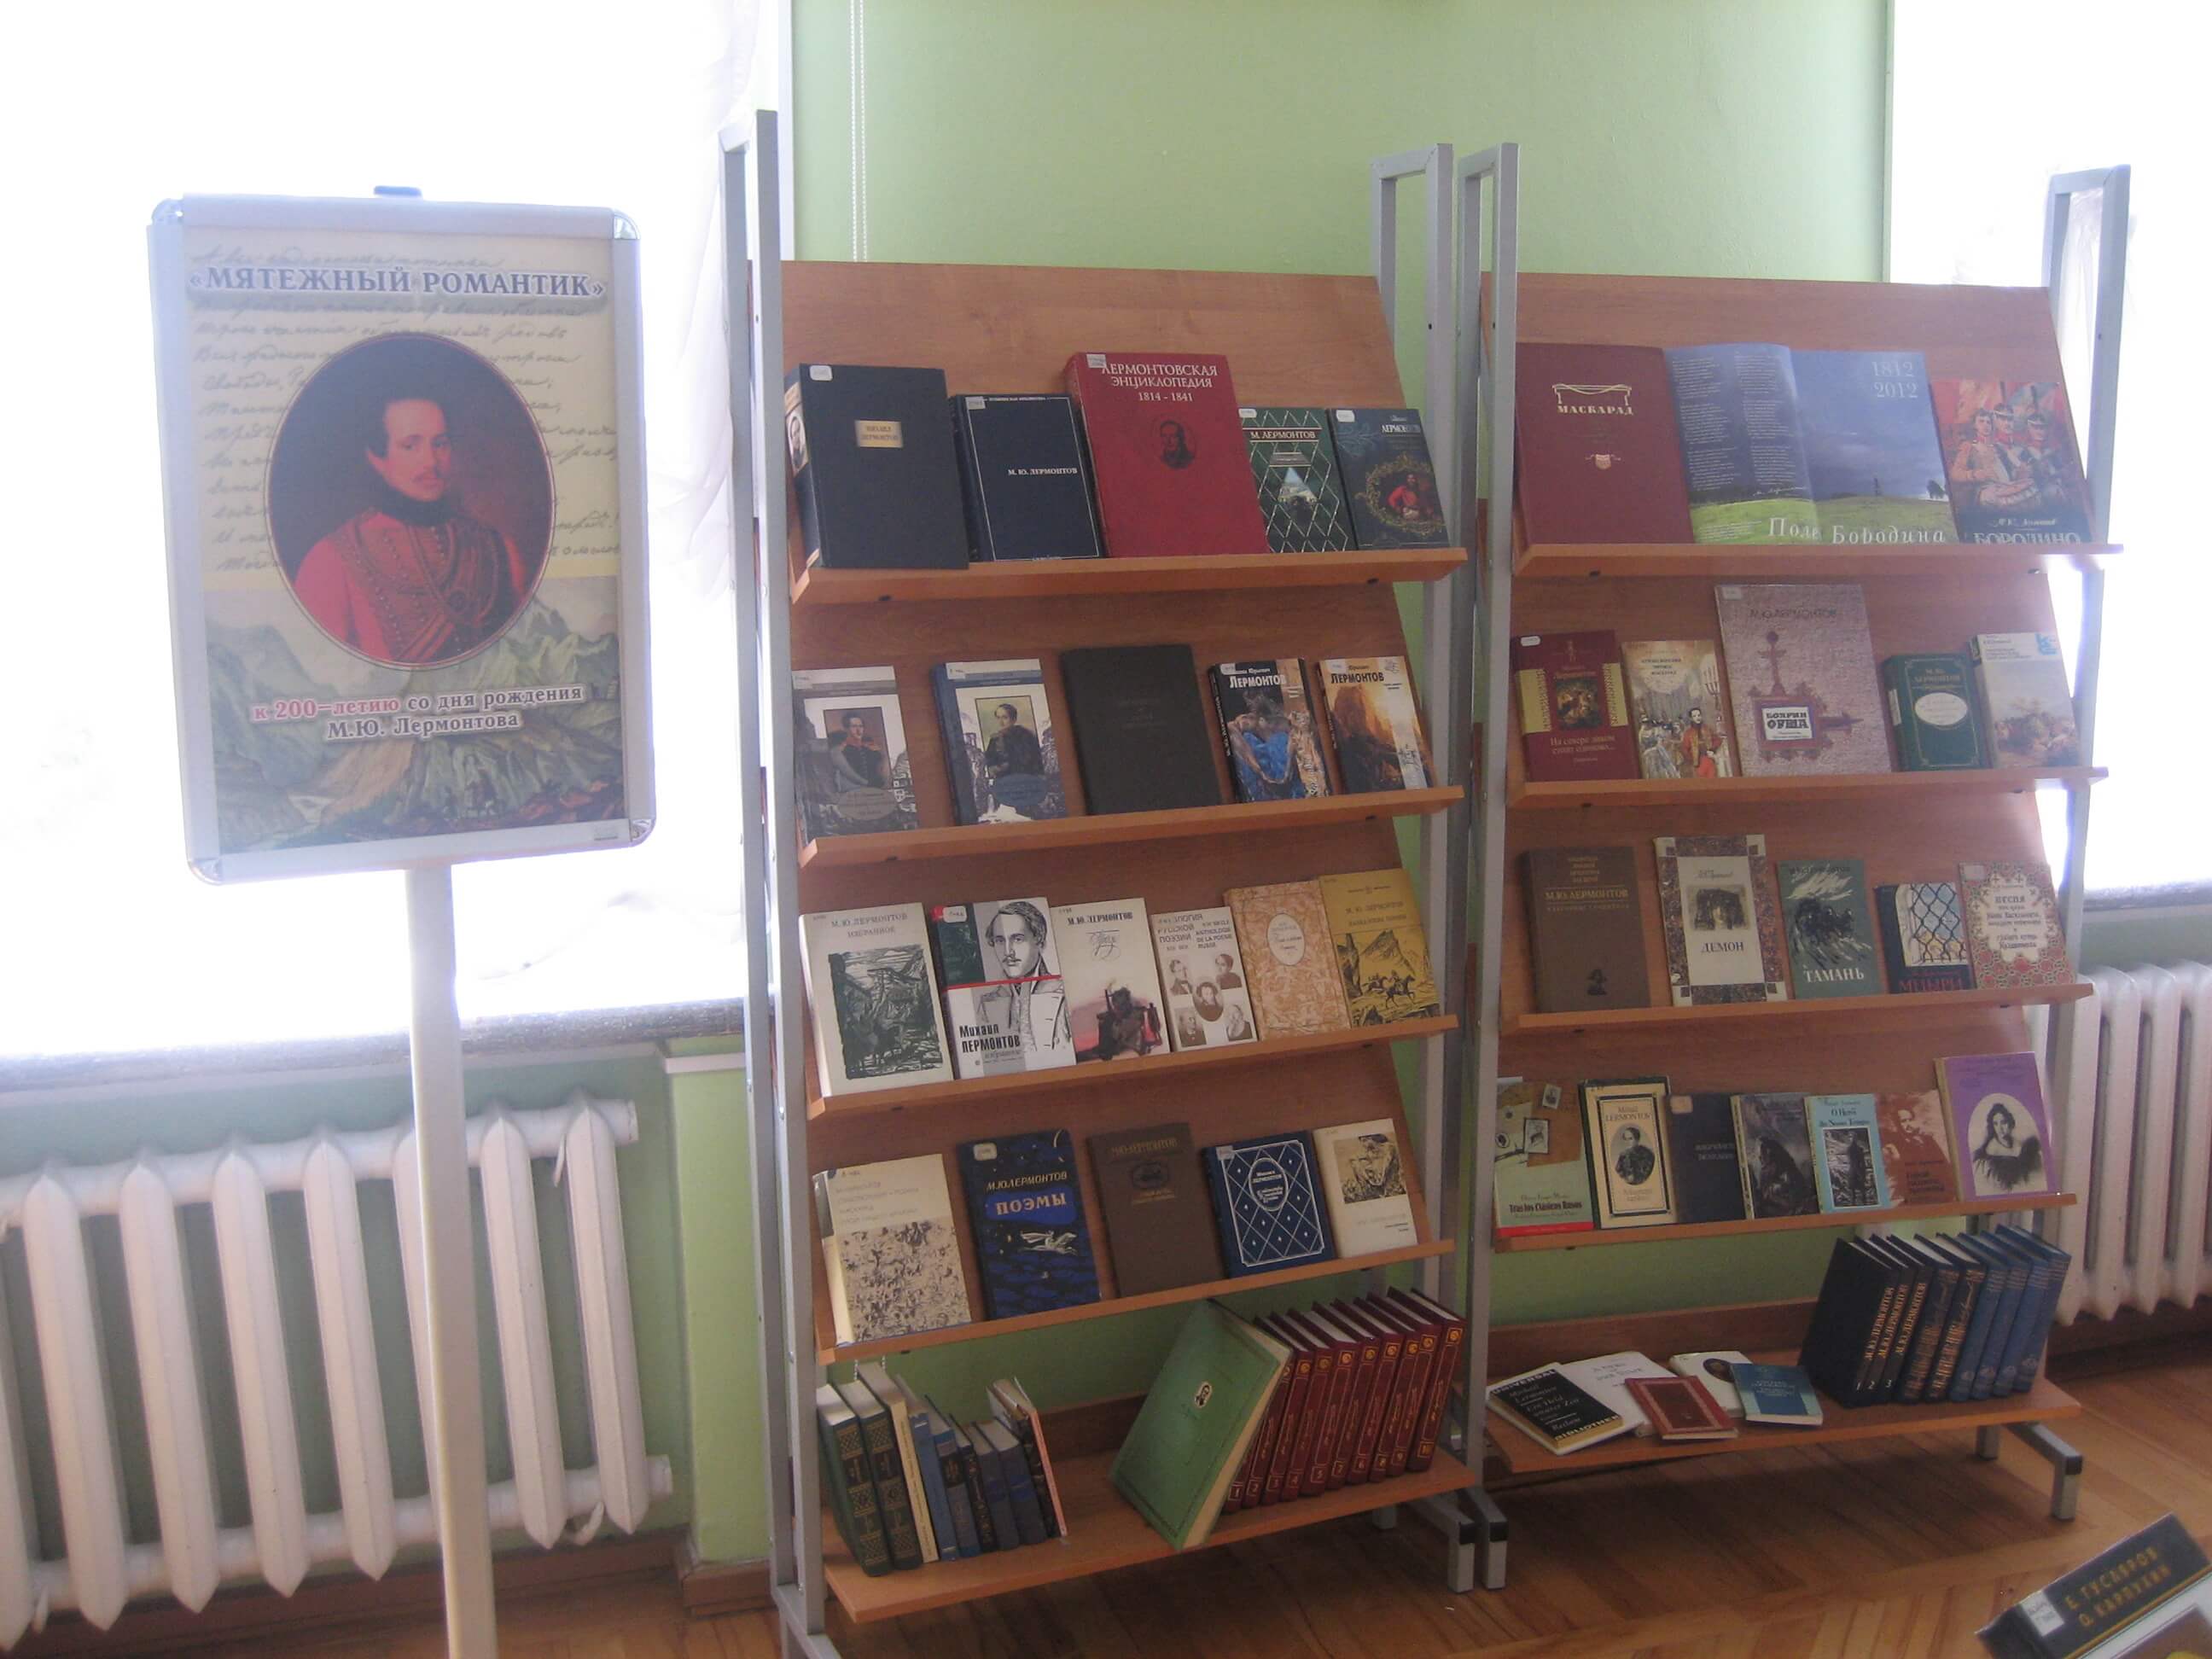 К 200-летию со дня рождения М.Ю. Лермонтова в Твери проходит выставка "Мятежный романтик"